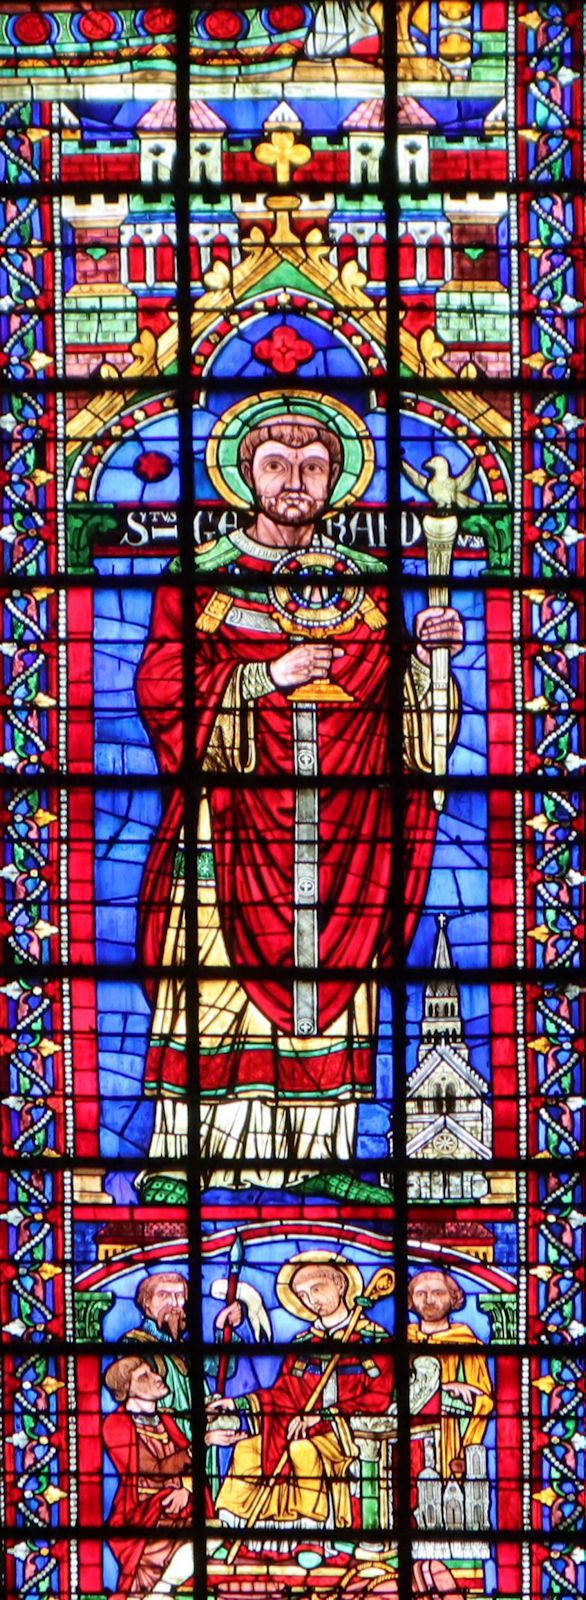 Bleiglasfenster in der Kathedrale in Toul